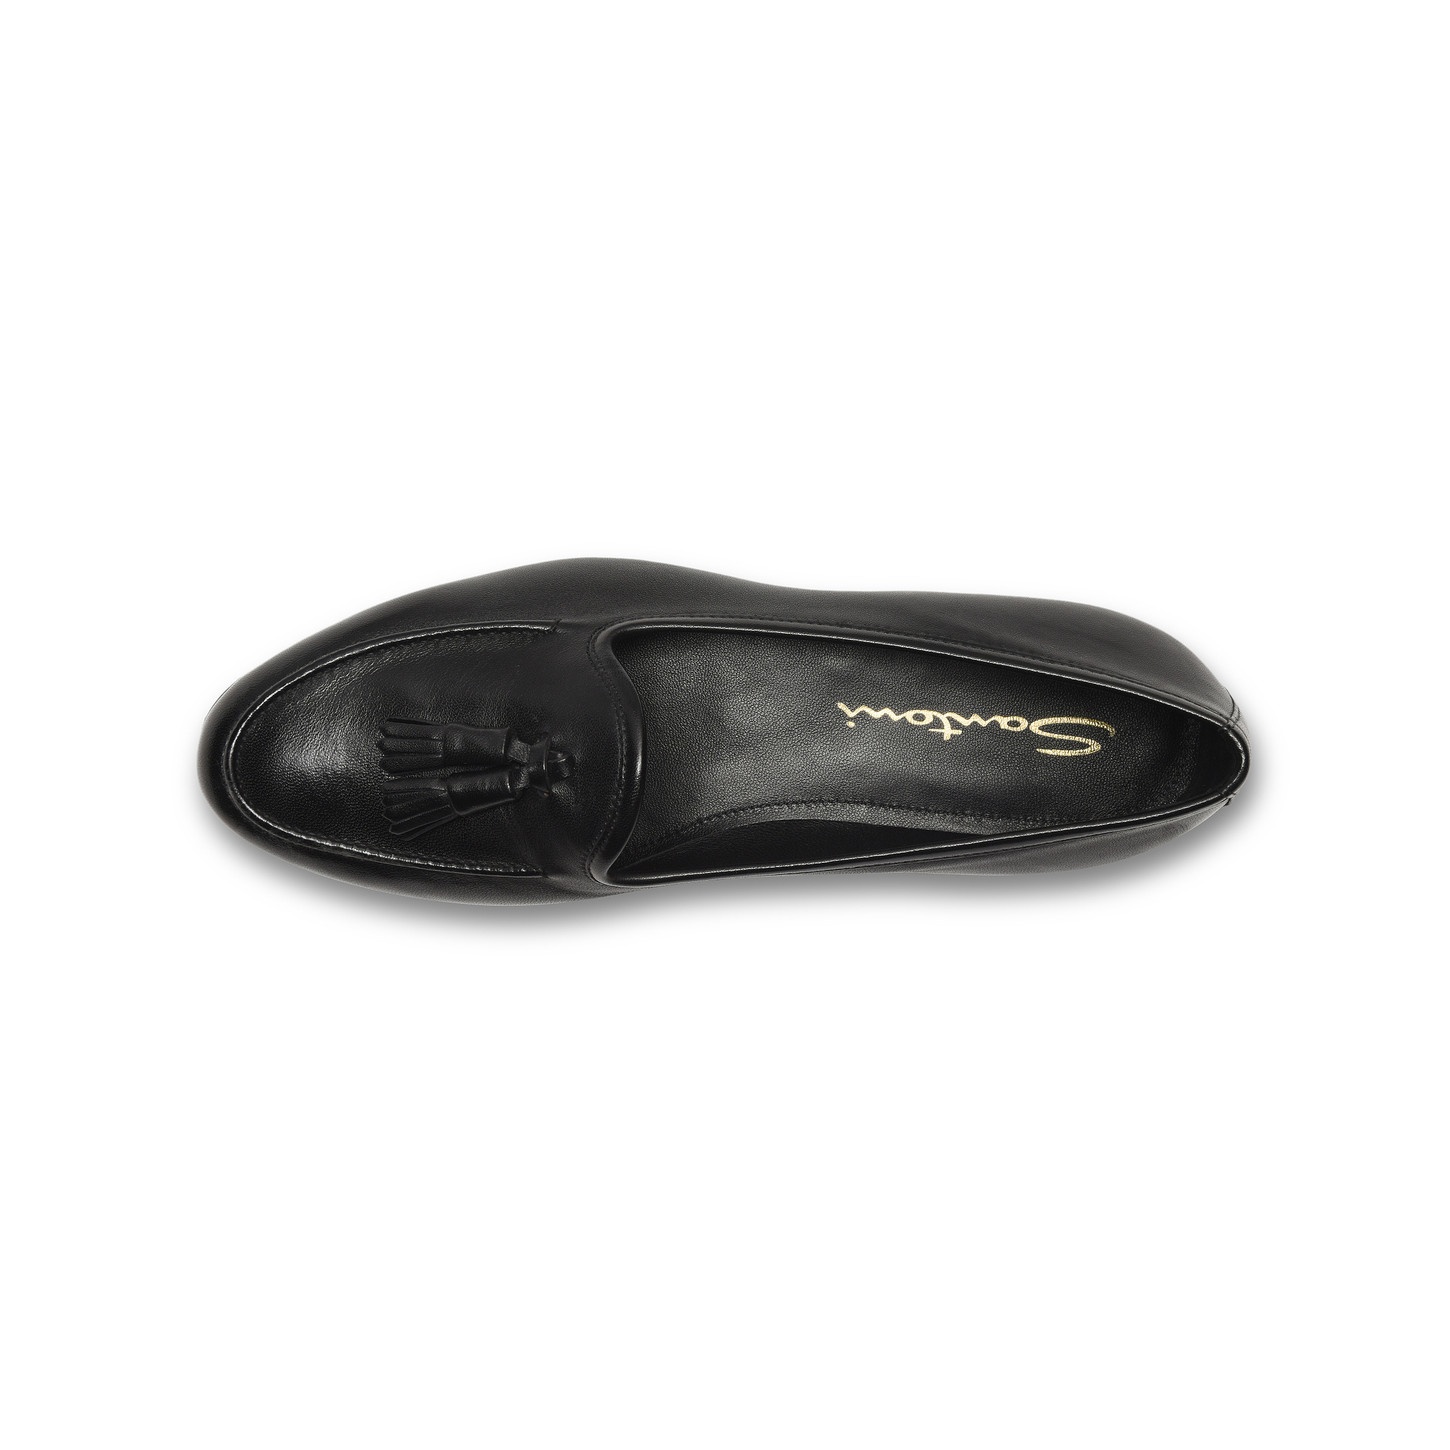 Women's black leather Andrea tassel loafer - 4